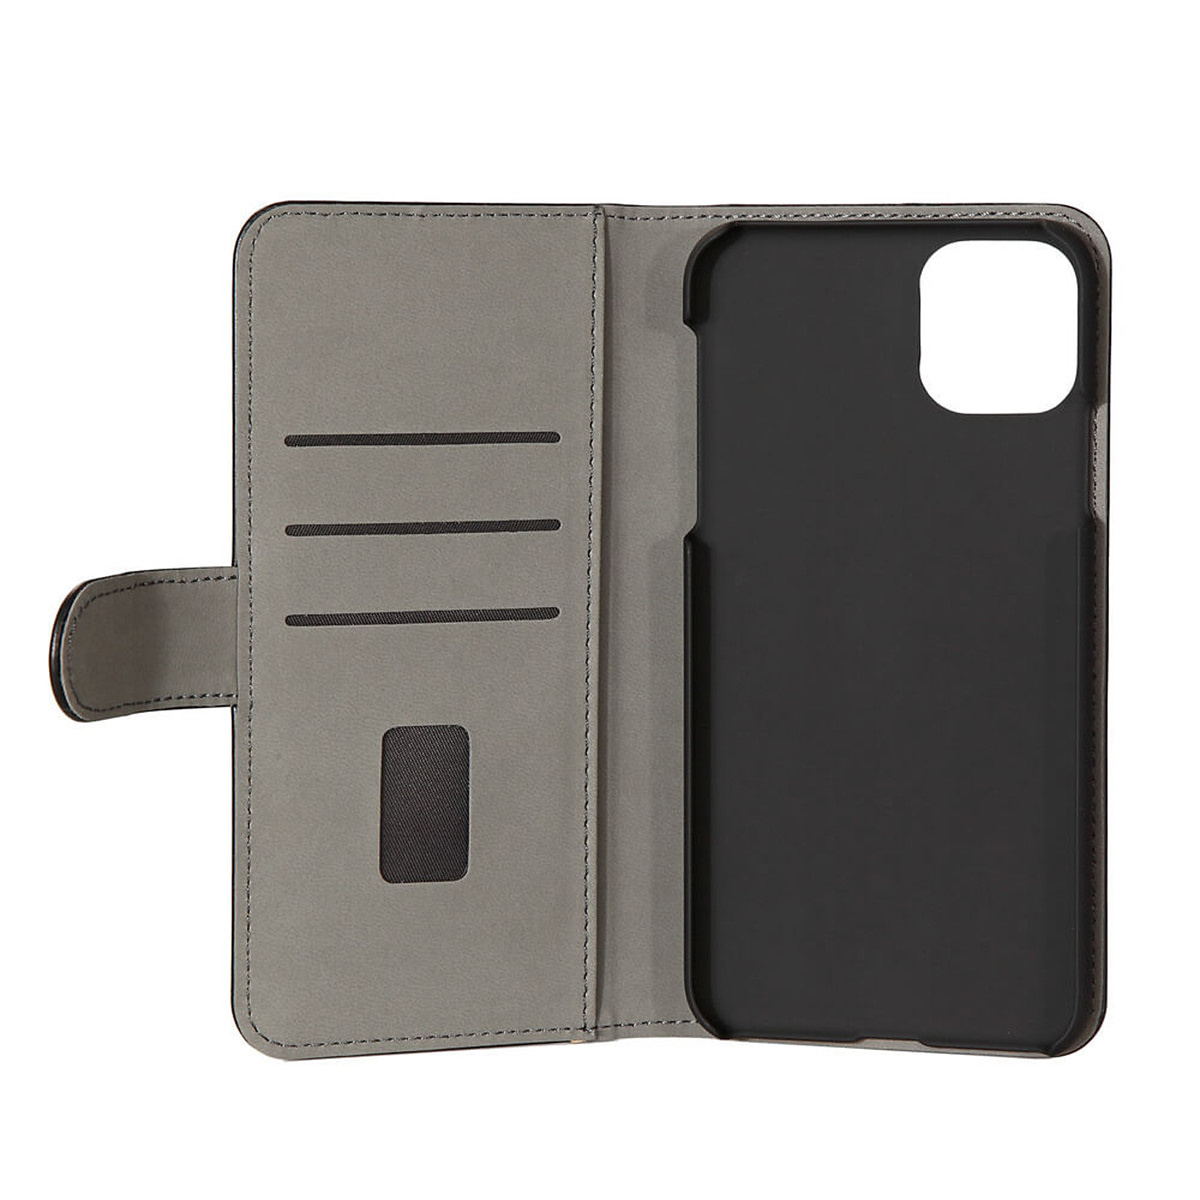 Gear plånboksväska, iPhone 11 Pro Max, svart